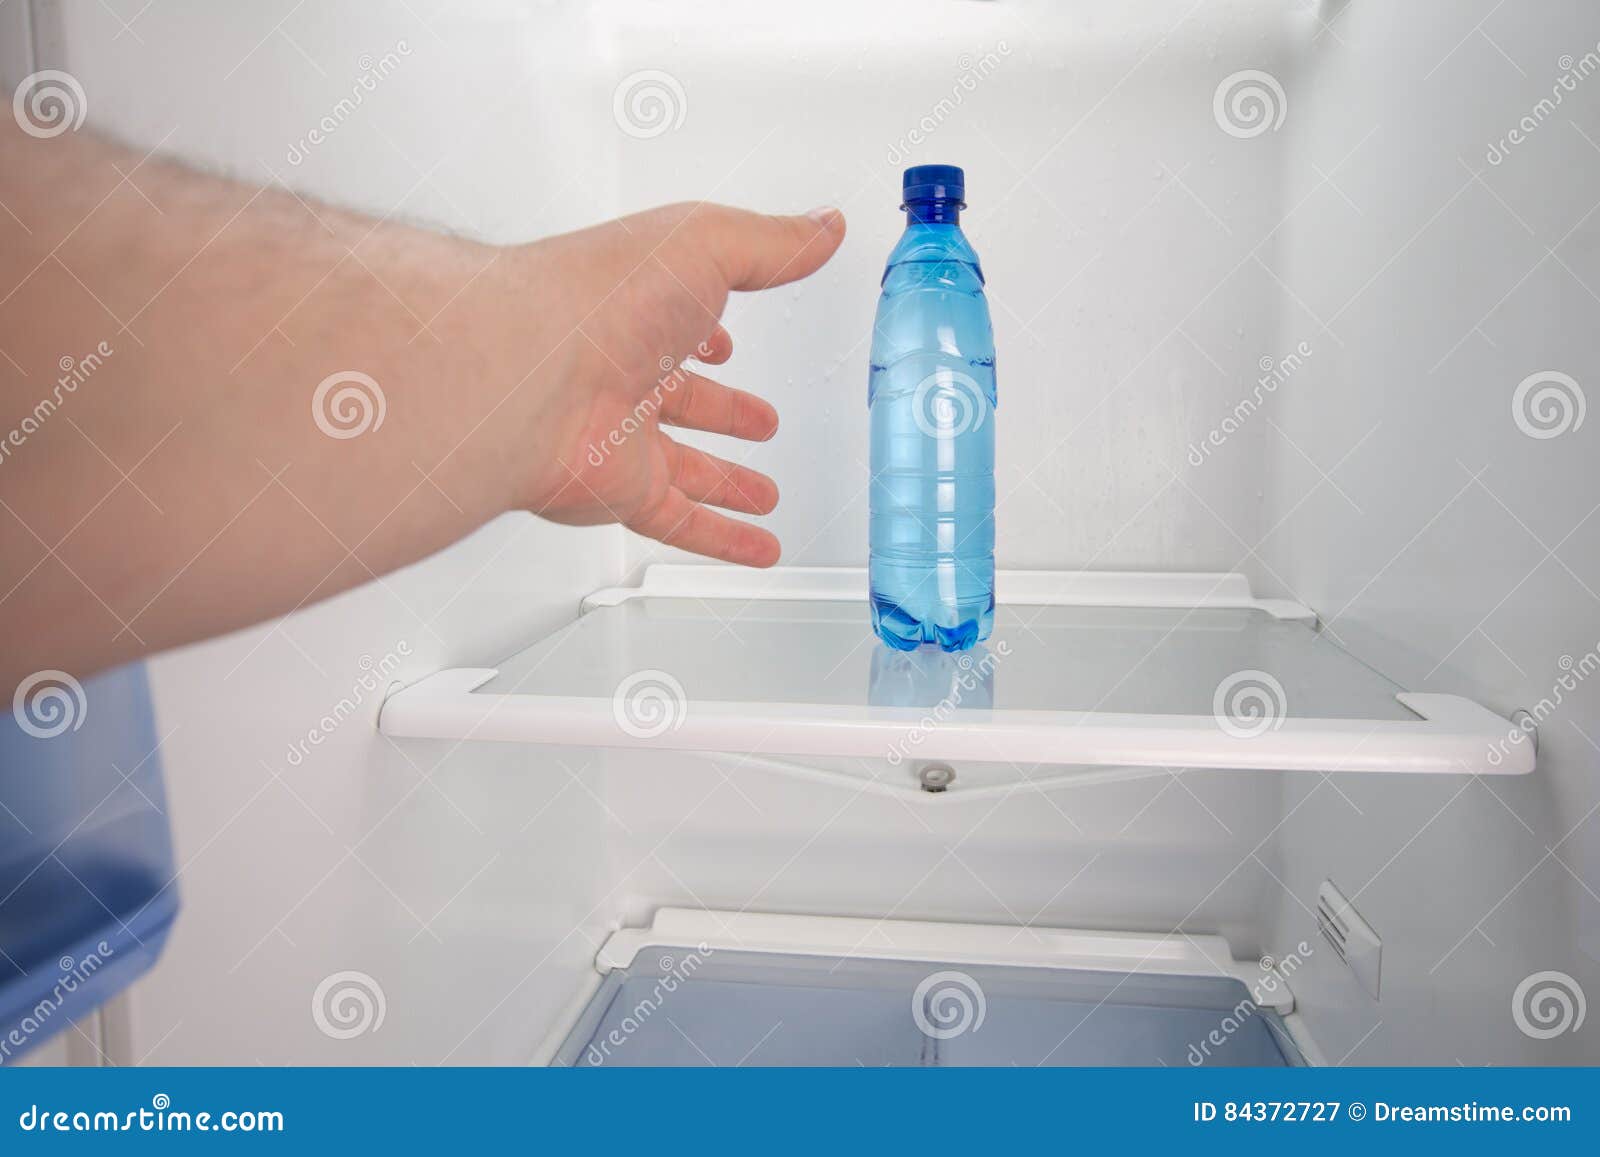 Холодильнике образуется вода. Холодильник для воды. Холодильник/минералка. Лоток для воды в холодильнике. Холодильник с холодной водой.